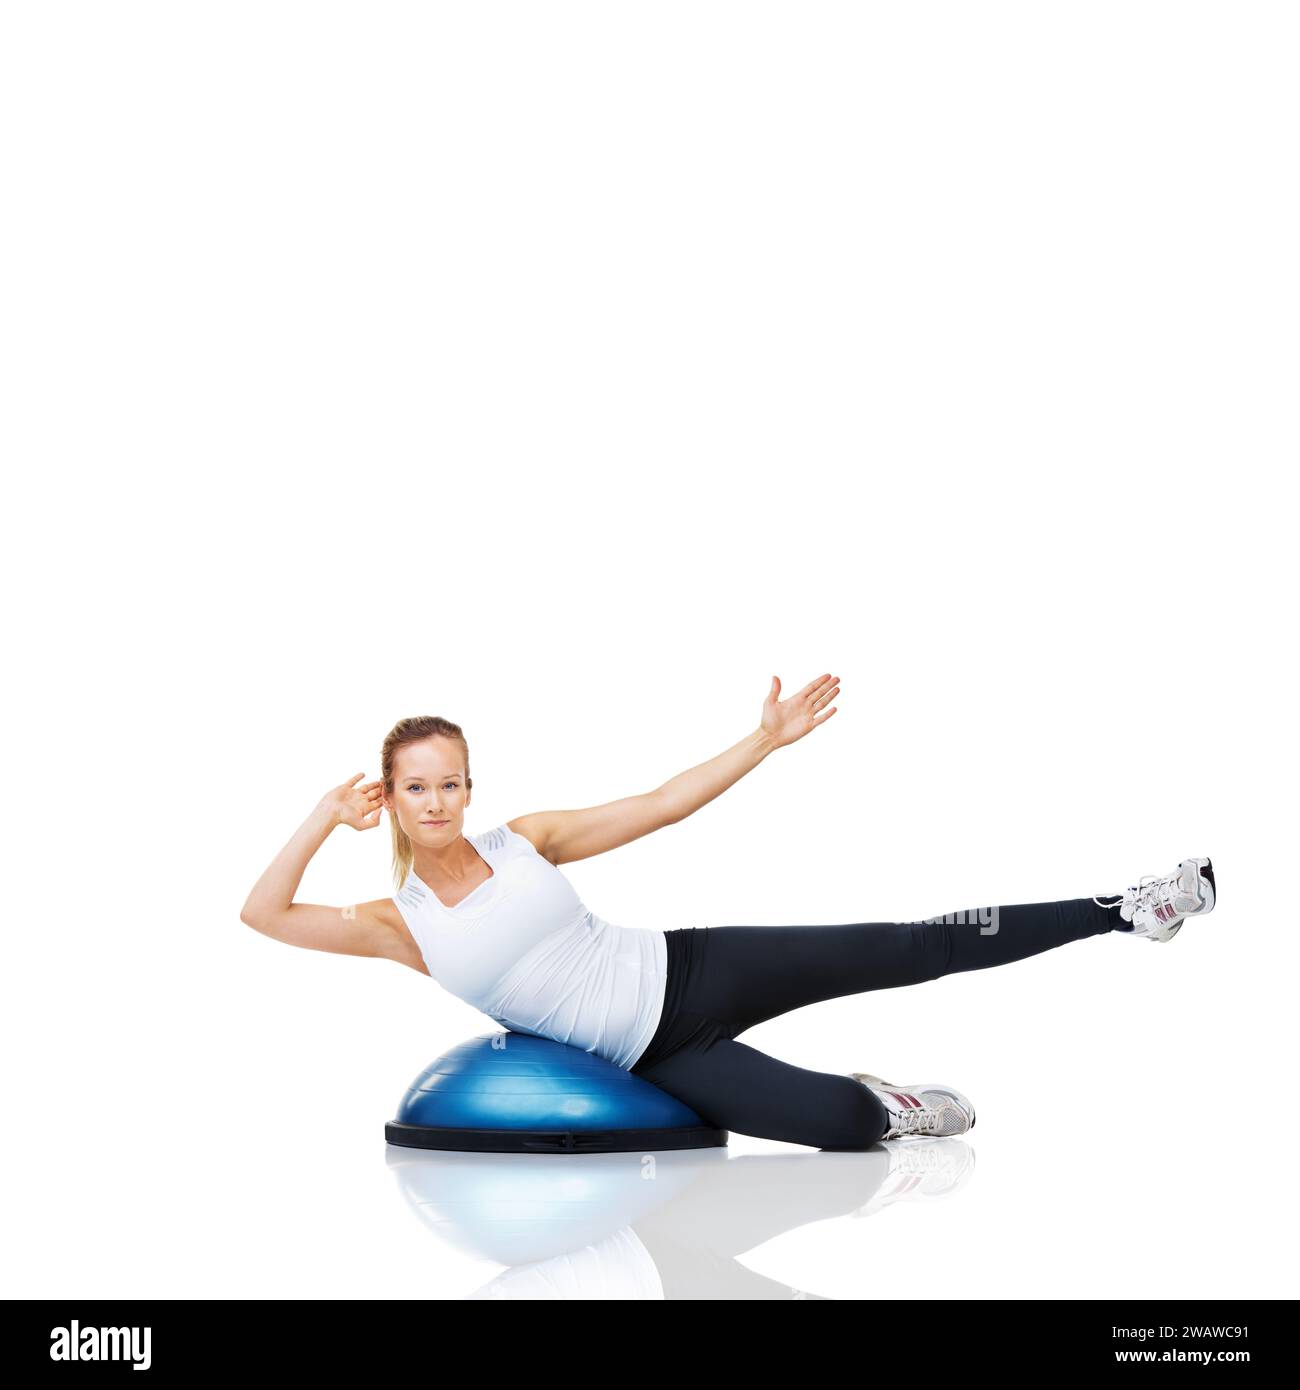 Frau, Athletin und Fitness mit bosu Ball für Core Training und Muskel, Balance und Workout auf weißem Hintergrund. Trainingsgeräte, Kraft und Stockfoto